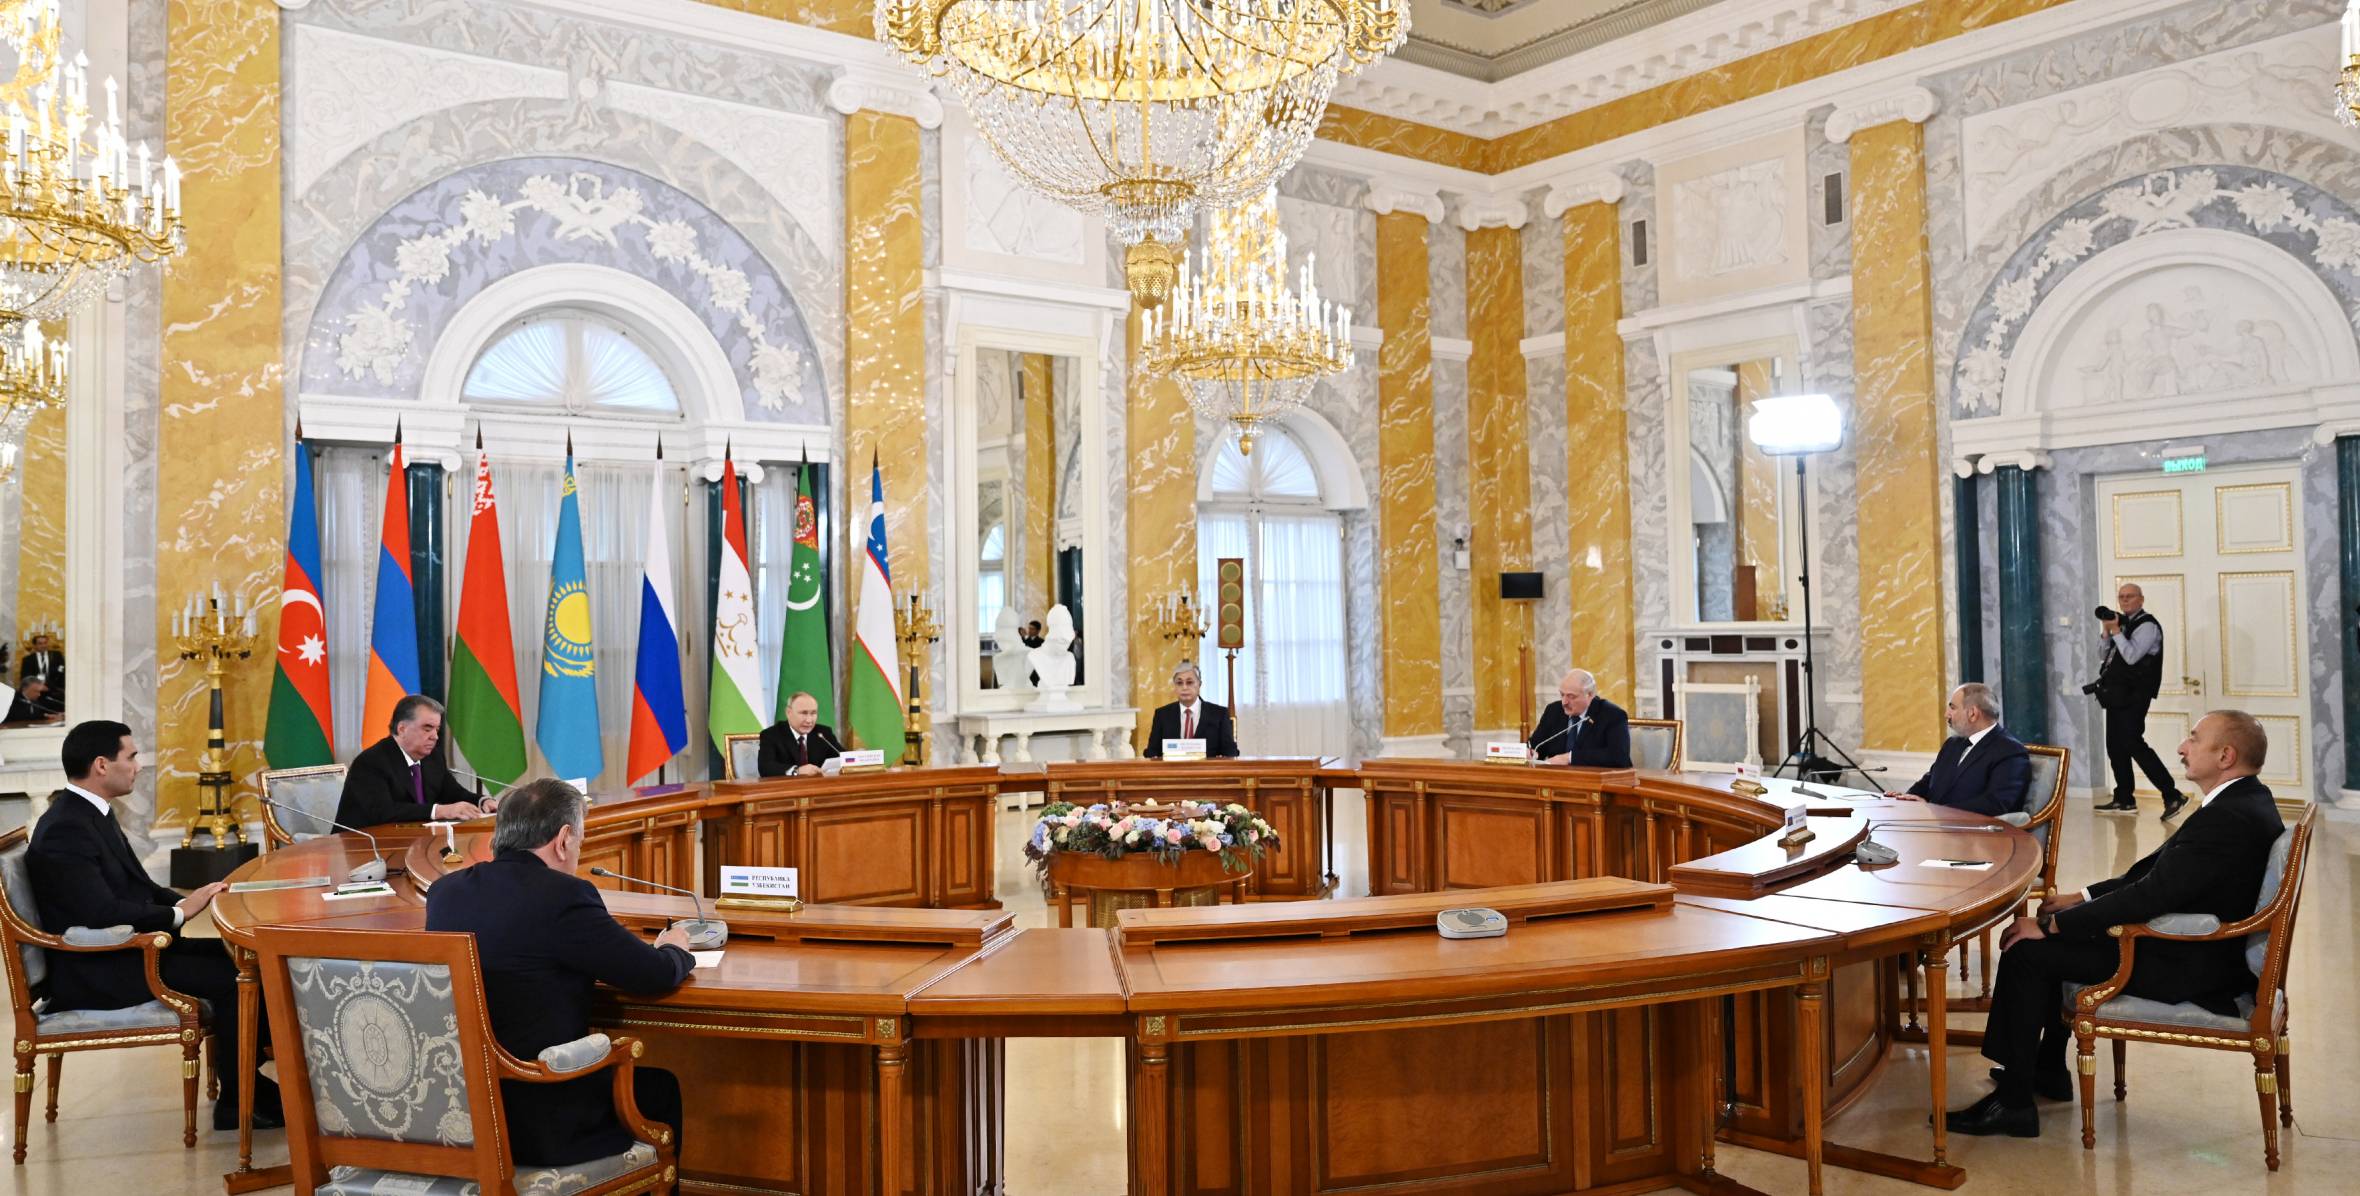 Informal meeting of CIS heads of state was held in Saint Petersburg